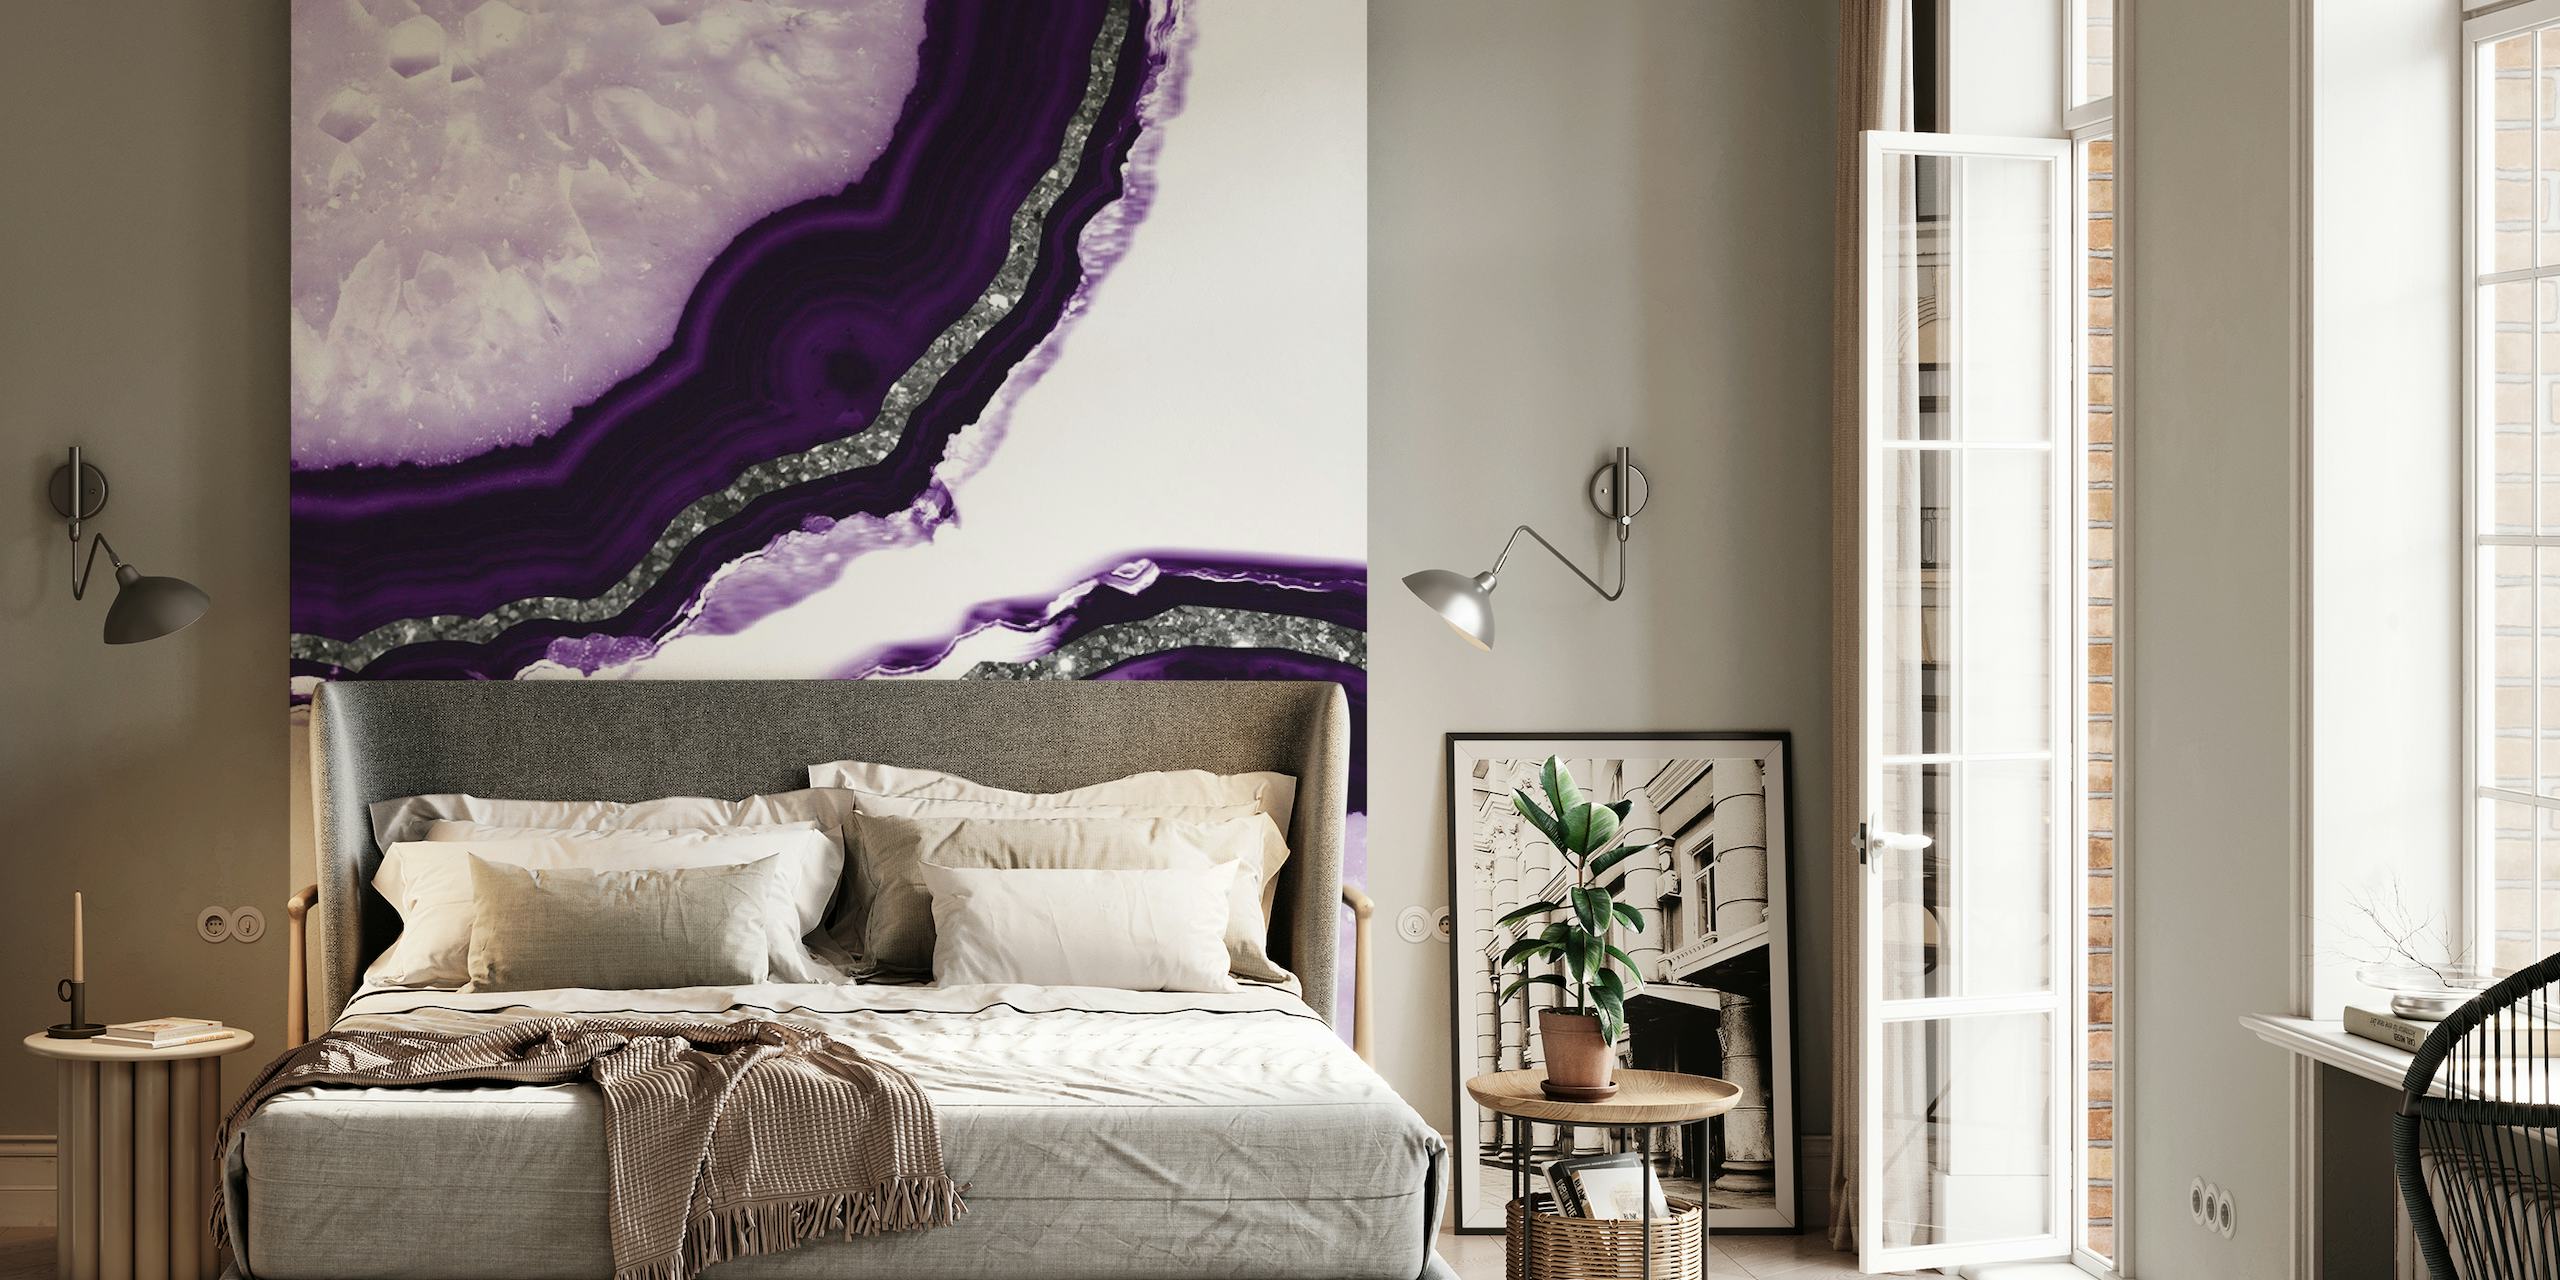 Gros plan de la fresque murale Agate Glitter Glam 12a présentant des motifs d'agate violets et blancs avec des détails scintillants.